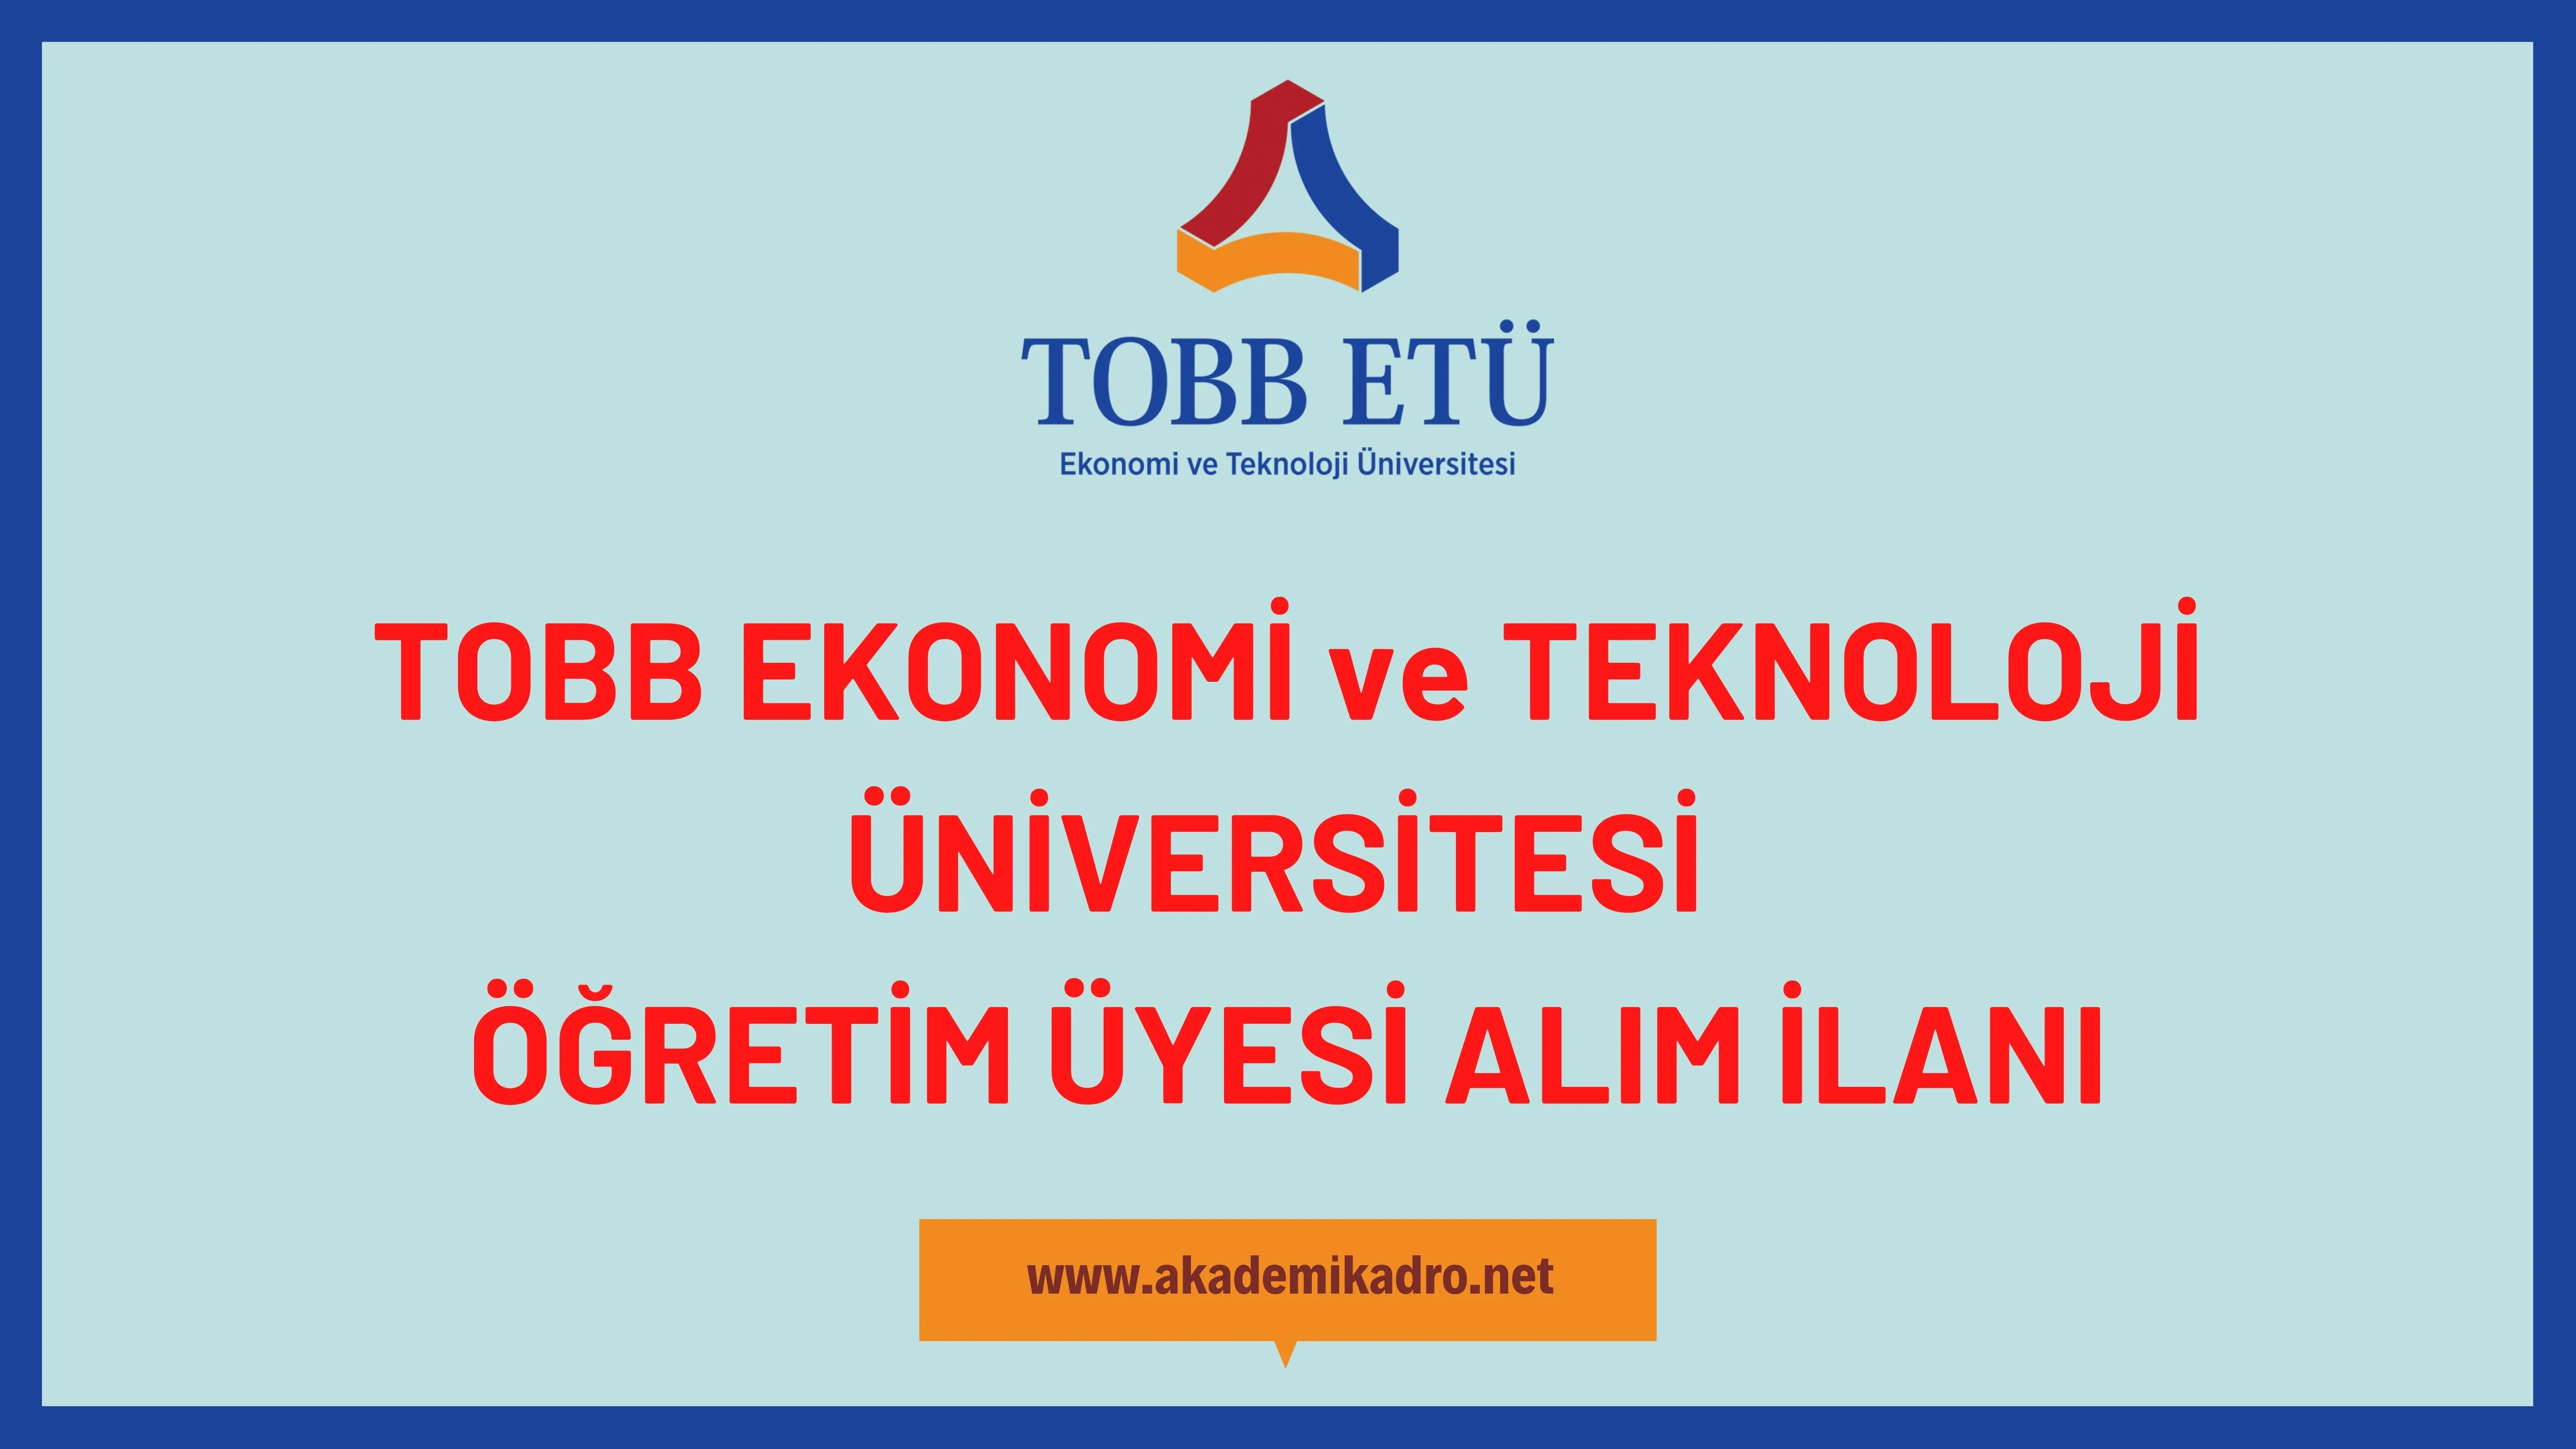 TOBB Ekonomi ve Teknoloji Üniversitesi 5 öğretim üyesi alacak.